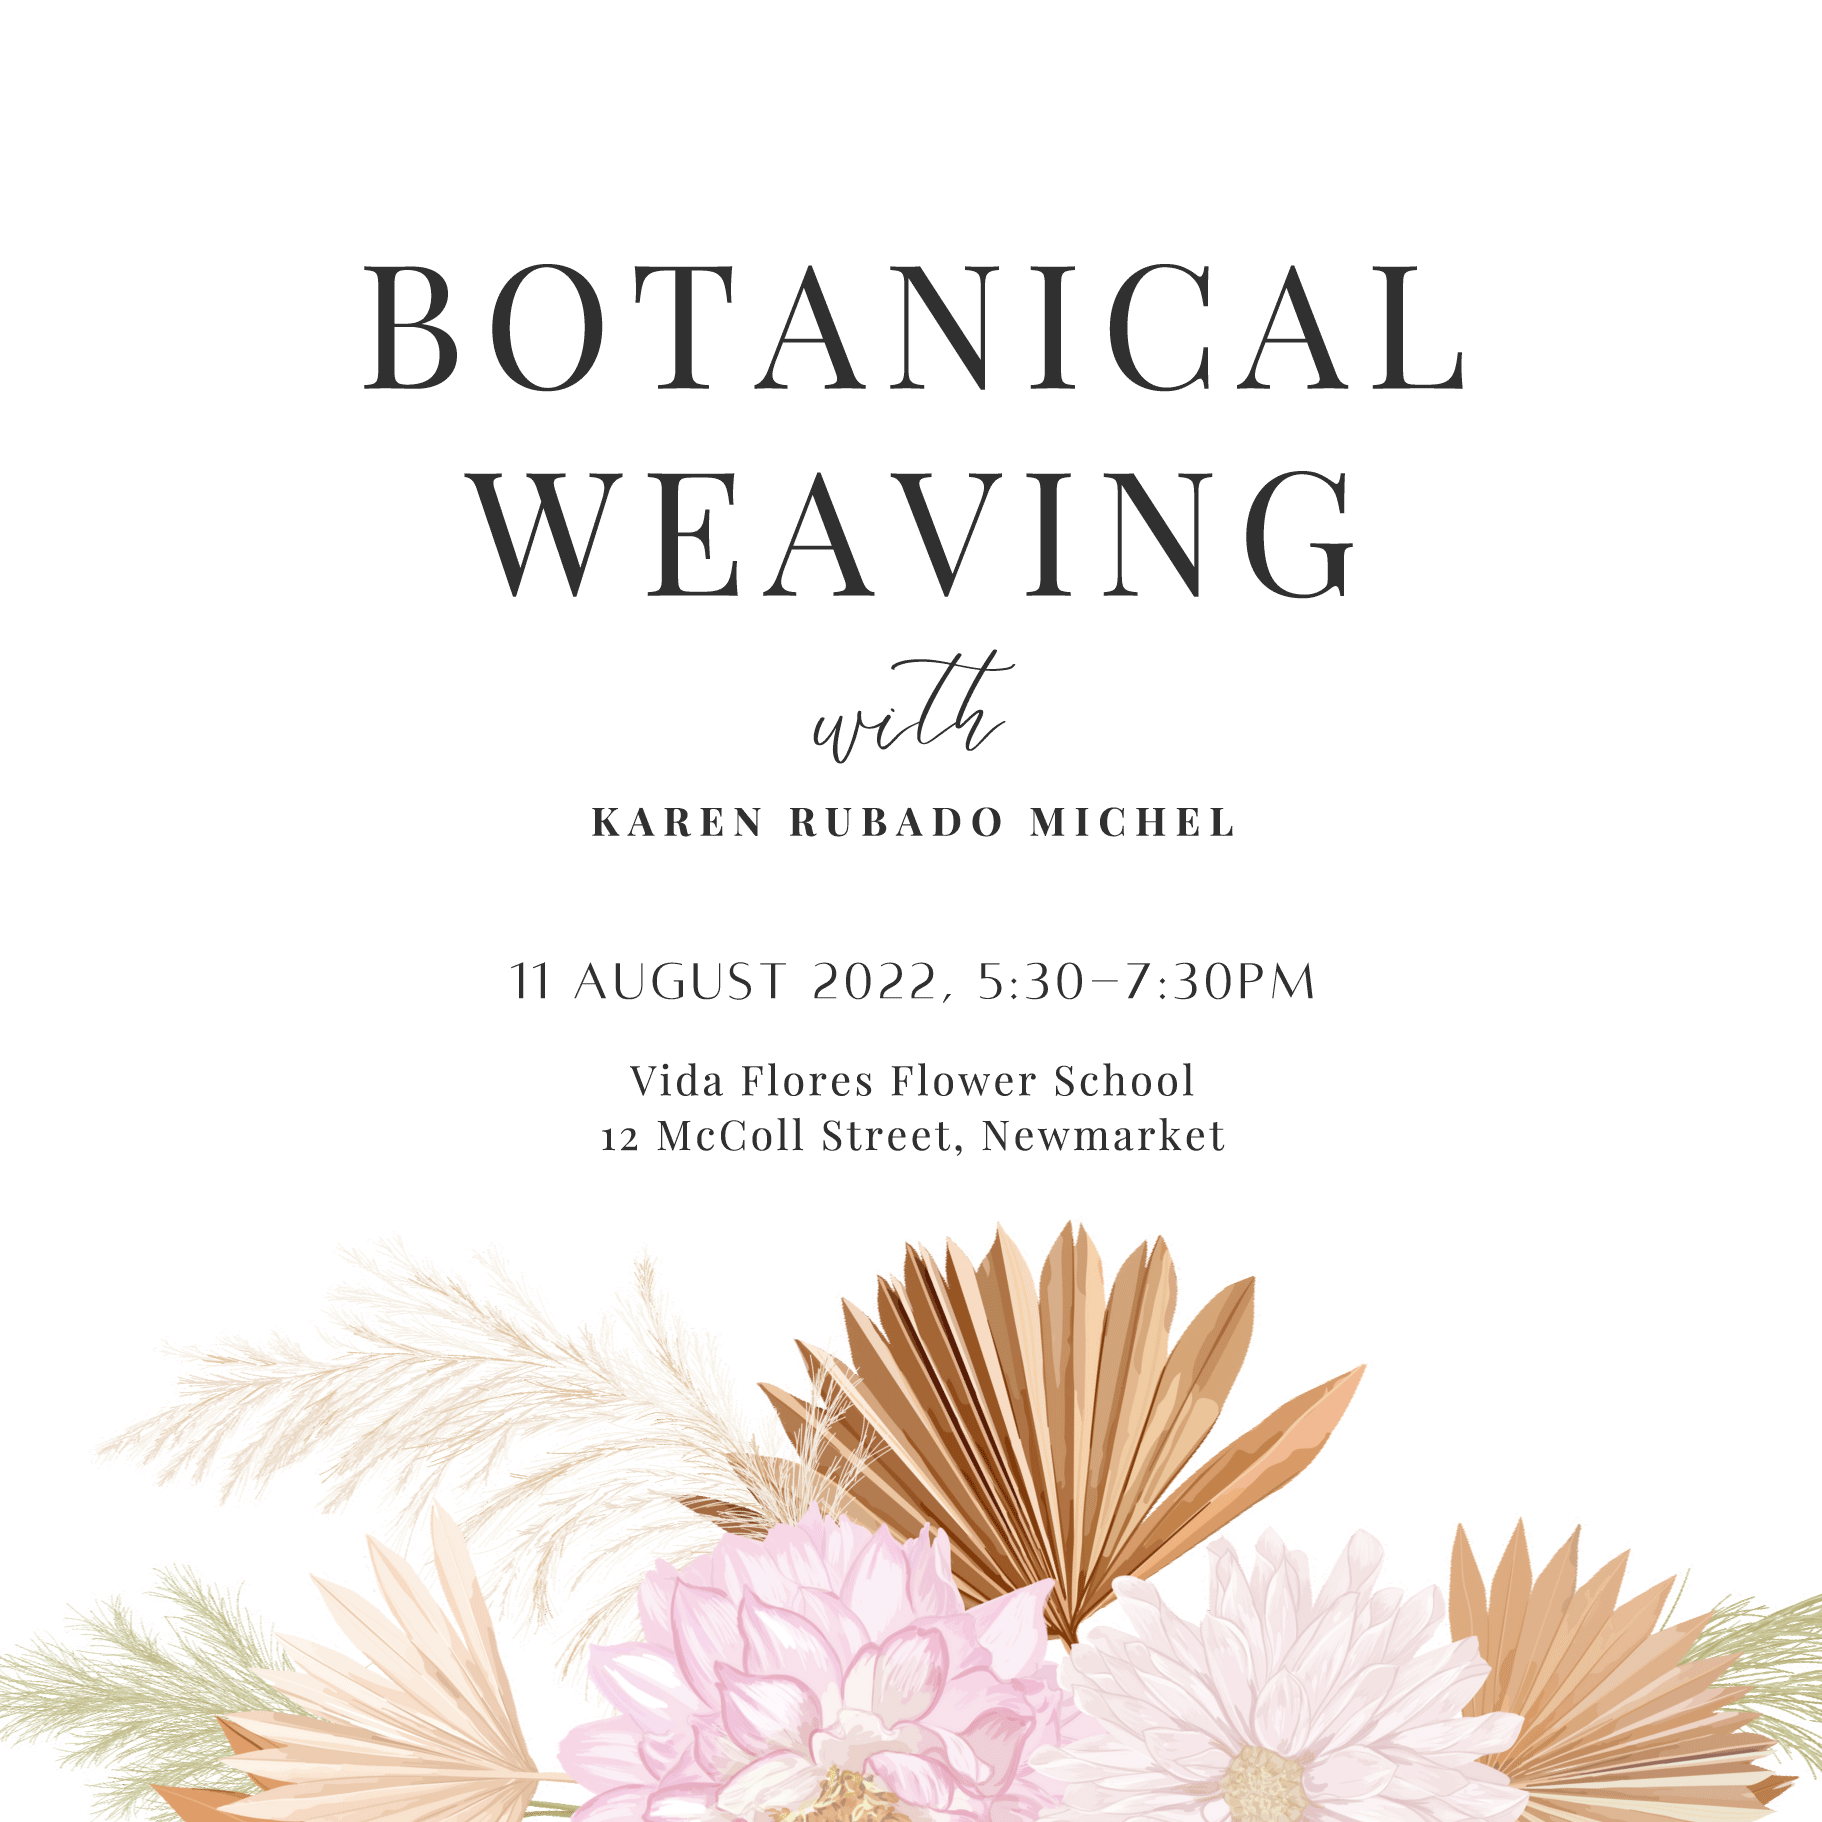 Botanical Weaving Workshop at Vida Flores